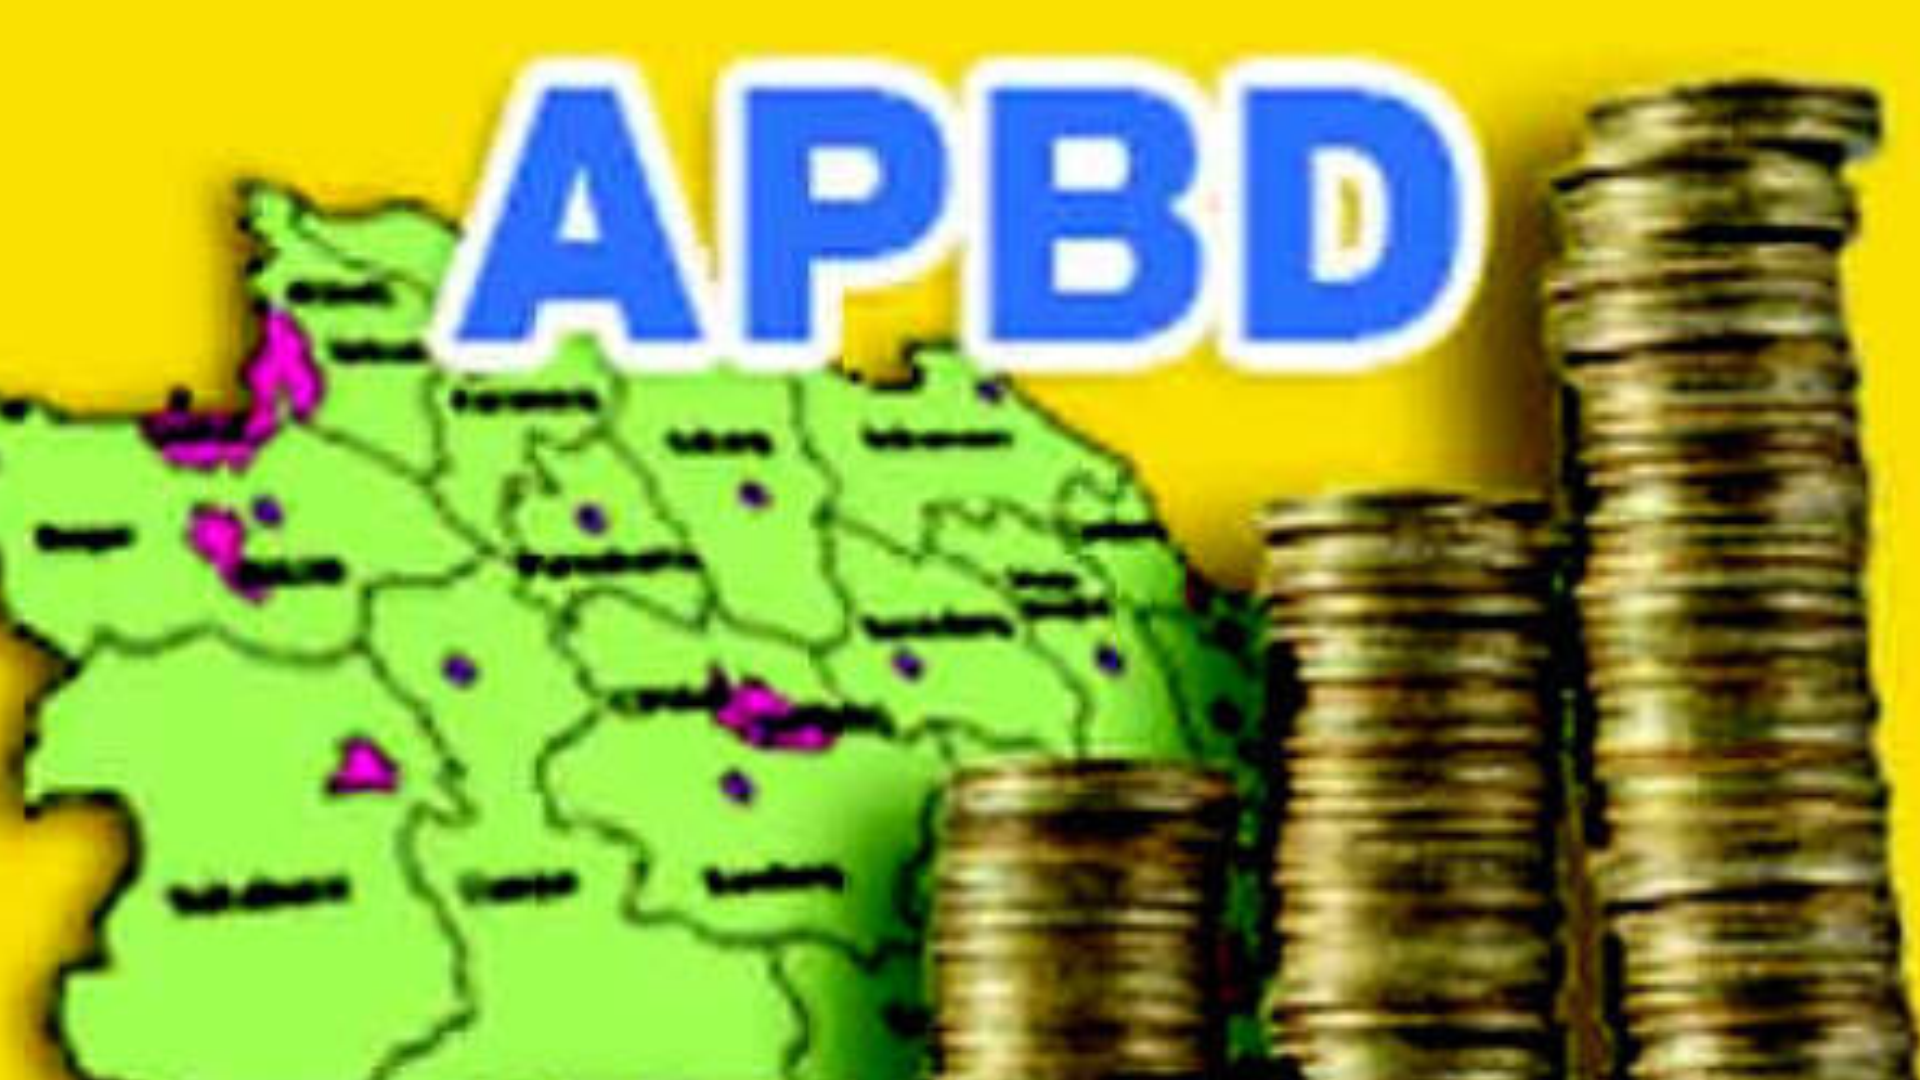 DPRD Inhu Mulai Laksanakan Pembahasan Ranperda Pertanggungjawaban APBD Inhu 2016